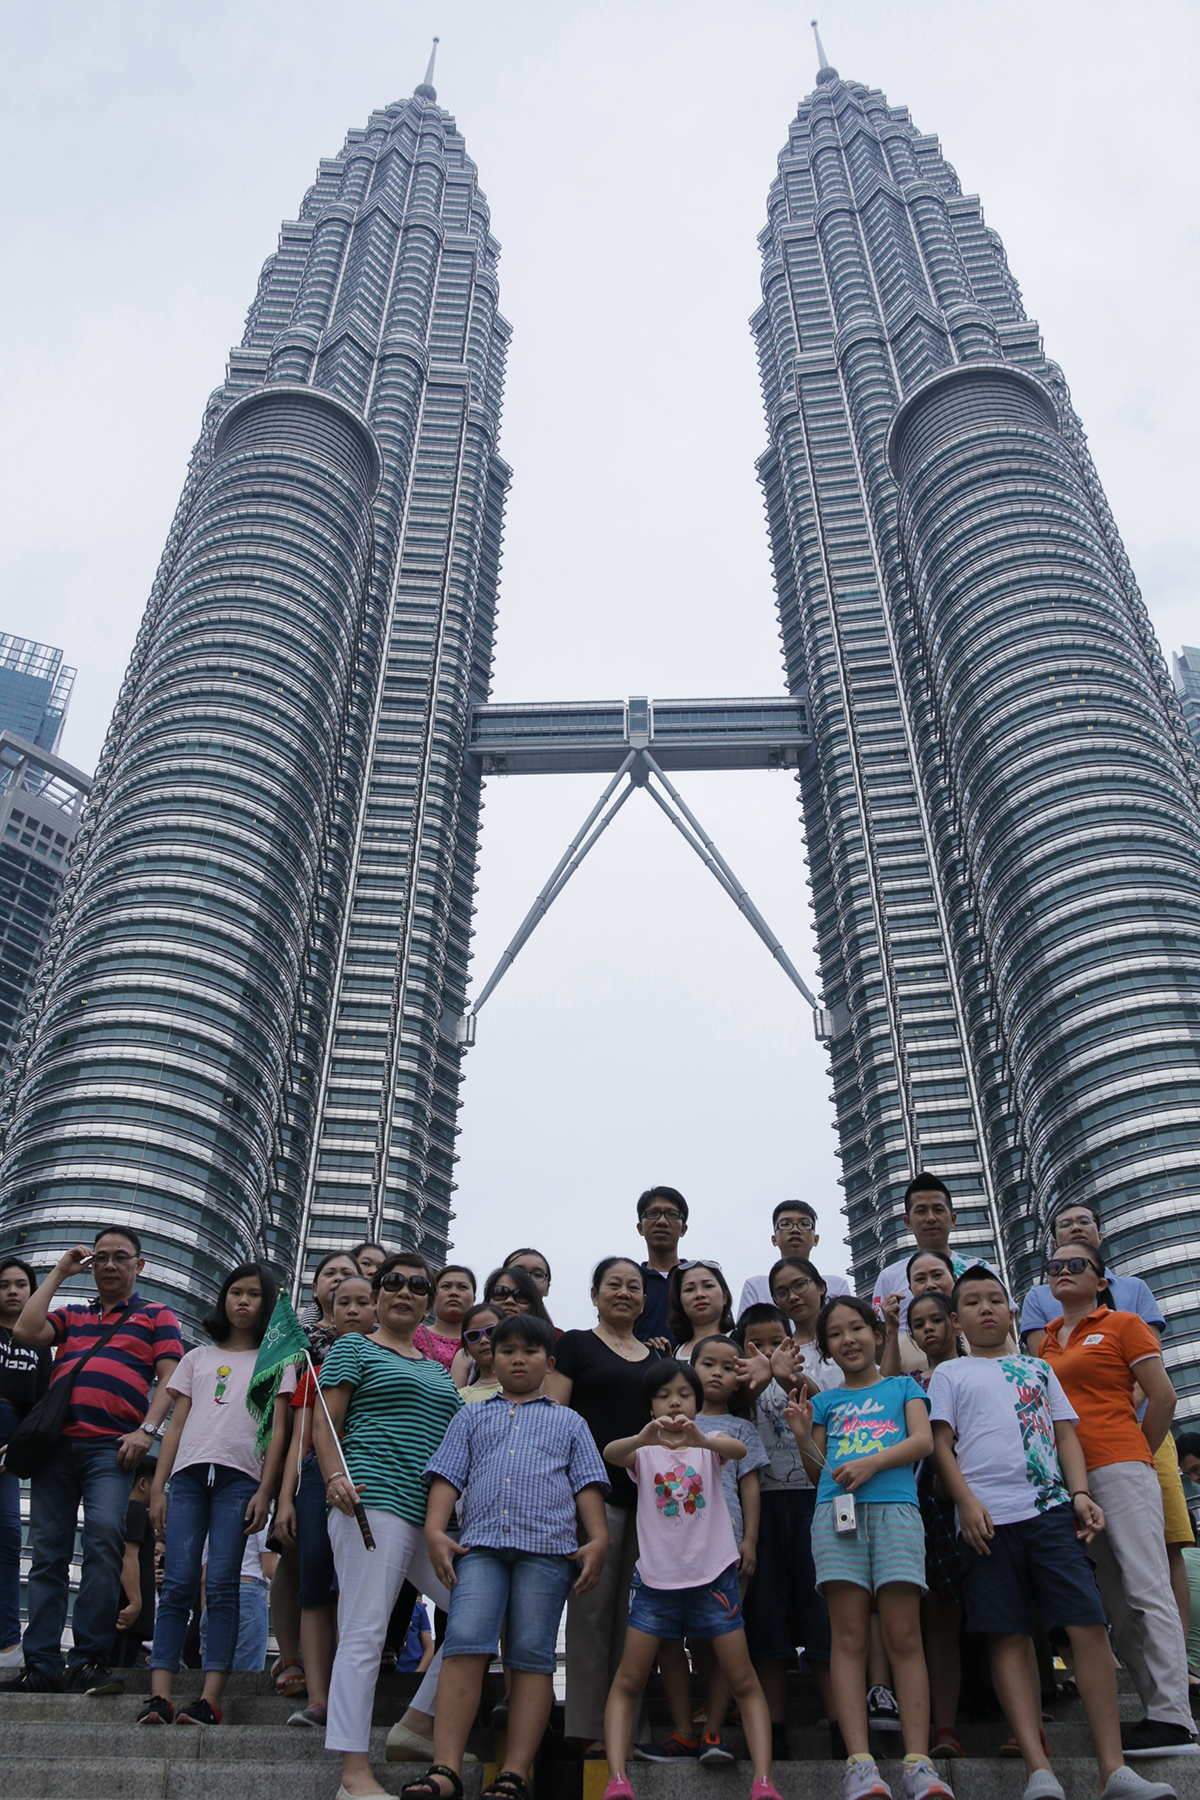 <p class="Normal" style="text-align:justify;"> Địa điểm bất kỳ ai đến với Malaysia đều muốn check-in chính là tháp tháp đôi Petronas (Twin Towers). Tháp đôi Petronas được xem là biểu tượng của đất nước Hồi giáo Malaysia, đây là niềm tự hào của người dân, đại diện cho giá trị tăng trưởng và khát vọng nổi bật trong sân chơi thế giới. Tháp đôi Petronas có phong cách thiết kế độc đáo ít có trên thế giới, lấy cảm hứng từ kiến trúc của các nhà thờ Hồi giáo kết hợp với những nét kiến trúc mang phong cách hiện đại. Mặt ngoài của tòa tháp được làm hoàn toàn bằng kính và thép chịu lực theo phong cách kiến trúc nghệ thuật của đạo Hồi.</p> <p class="Normal" style="text-align:justify;"> Twin Towers có 88 tầng, cao 452 m từng giữ danh hiệu tòa nhà cao nhất thế giới trong suốt những năm từ 1998 đến 2003. </p>